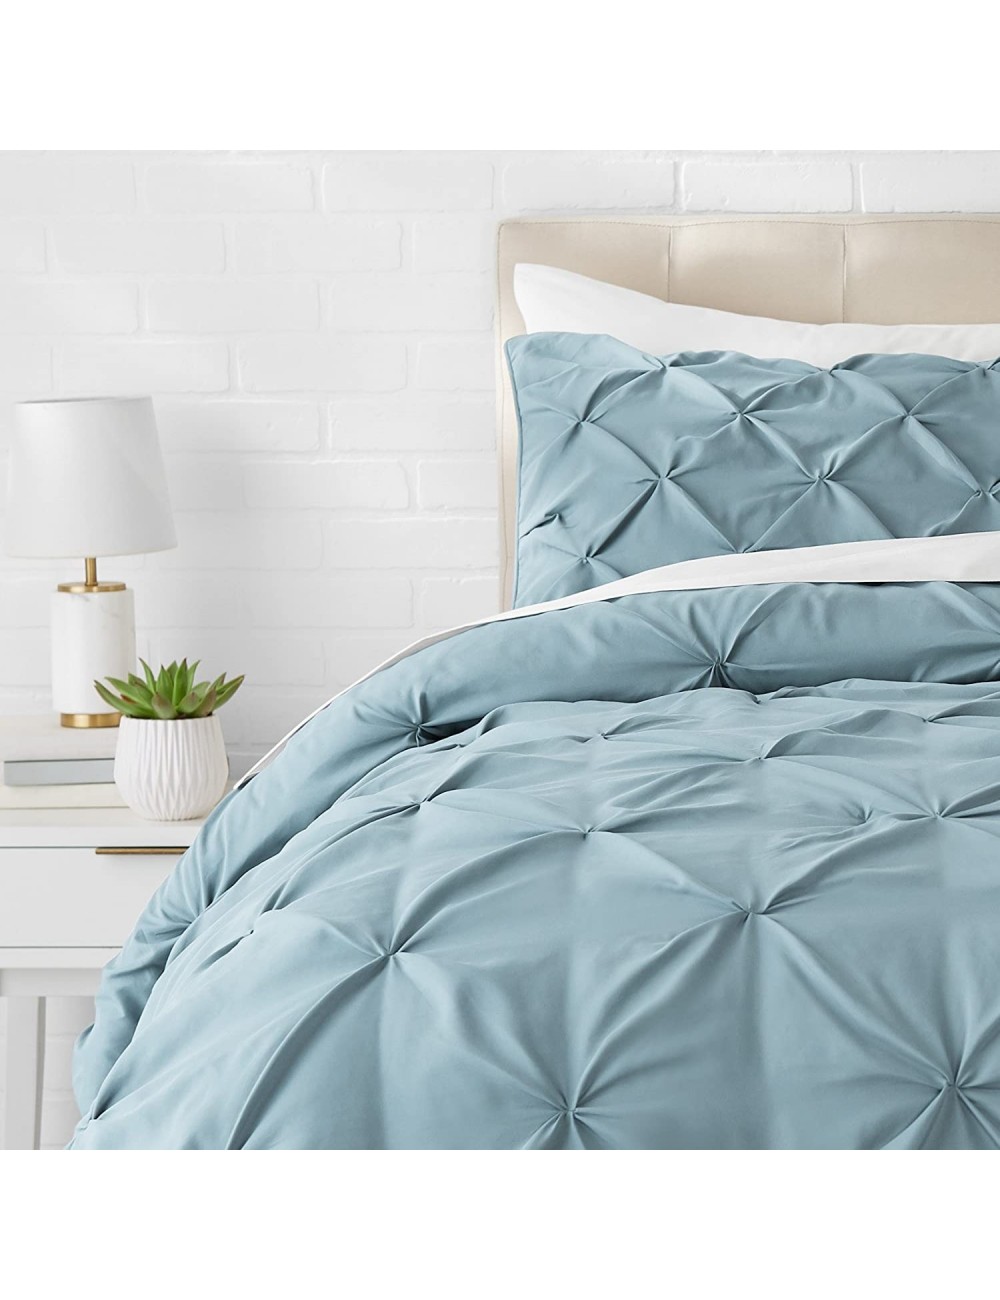 Húmedo Nombre provisional Corte Juego de cama con colcha fruncida en pellizco, 200 x 200 cm, Azul (Spa Blue)